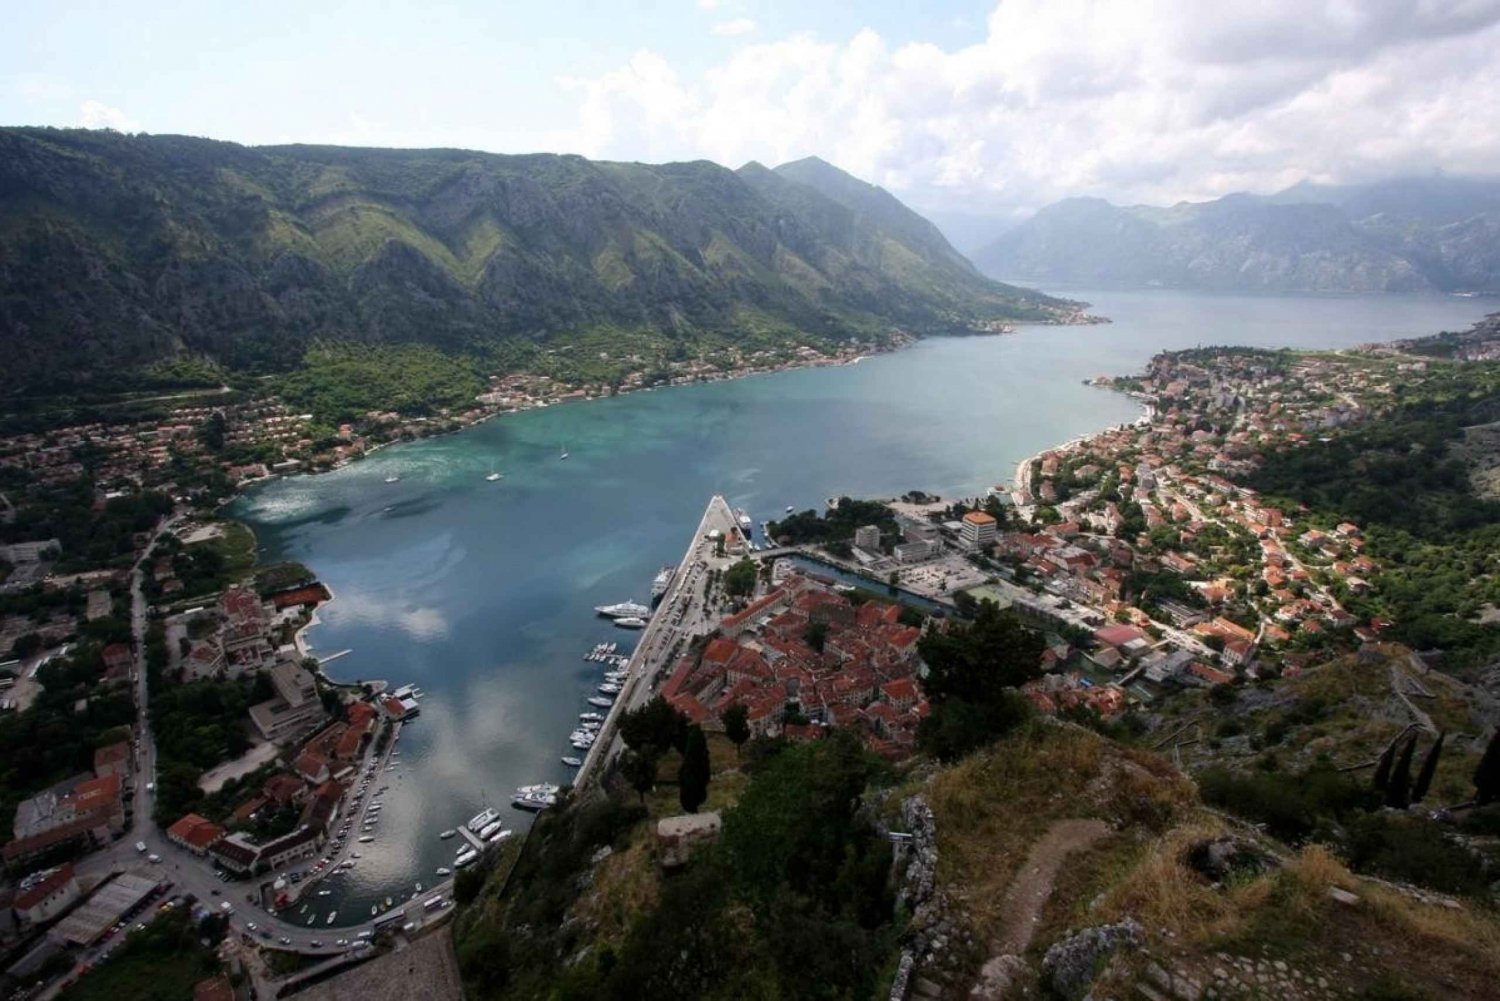 Cavtatista kokopäiväretki Montenegroon Perast, Kotor ja Budva